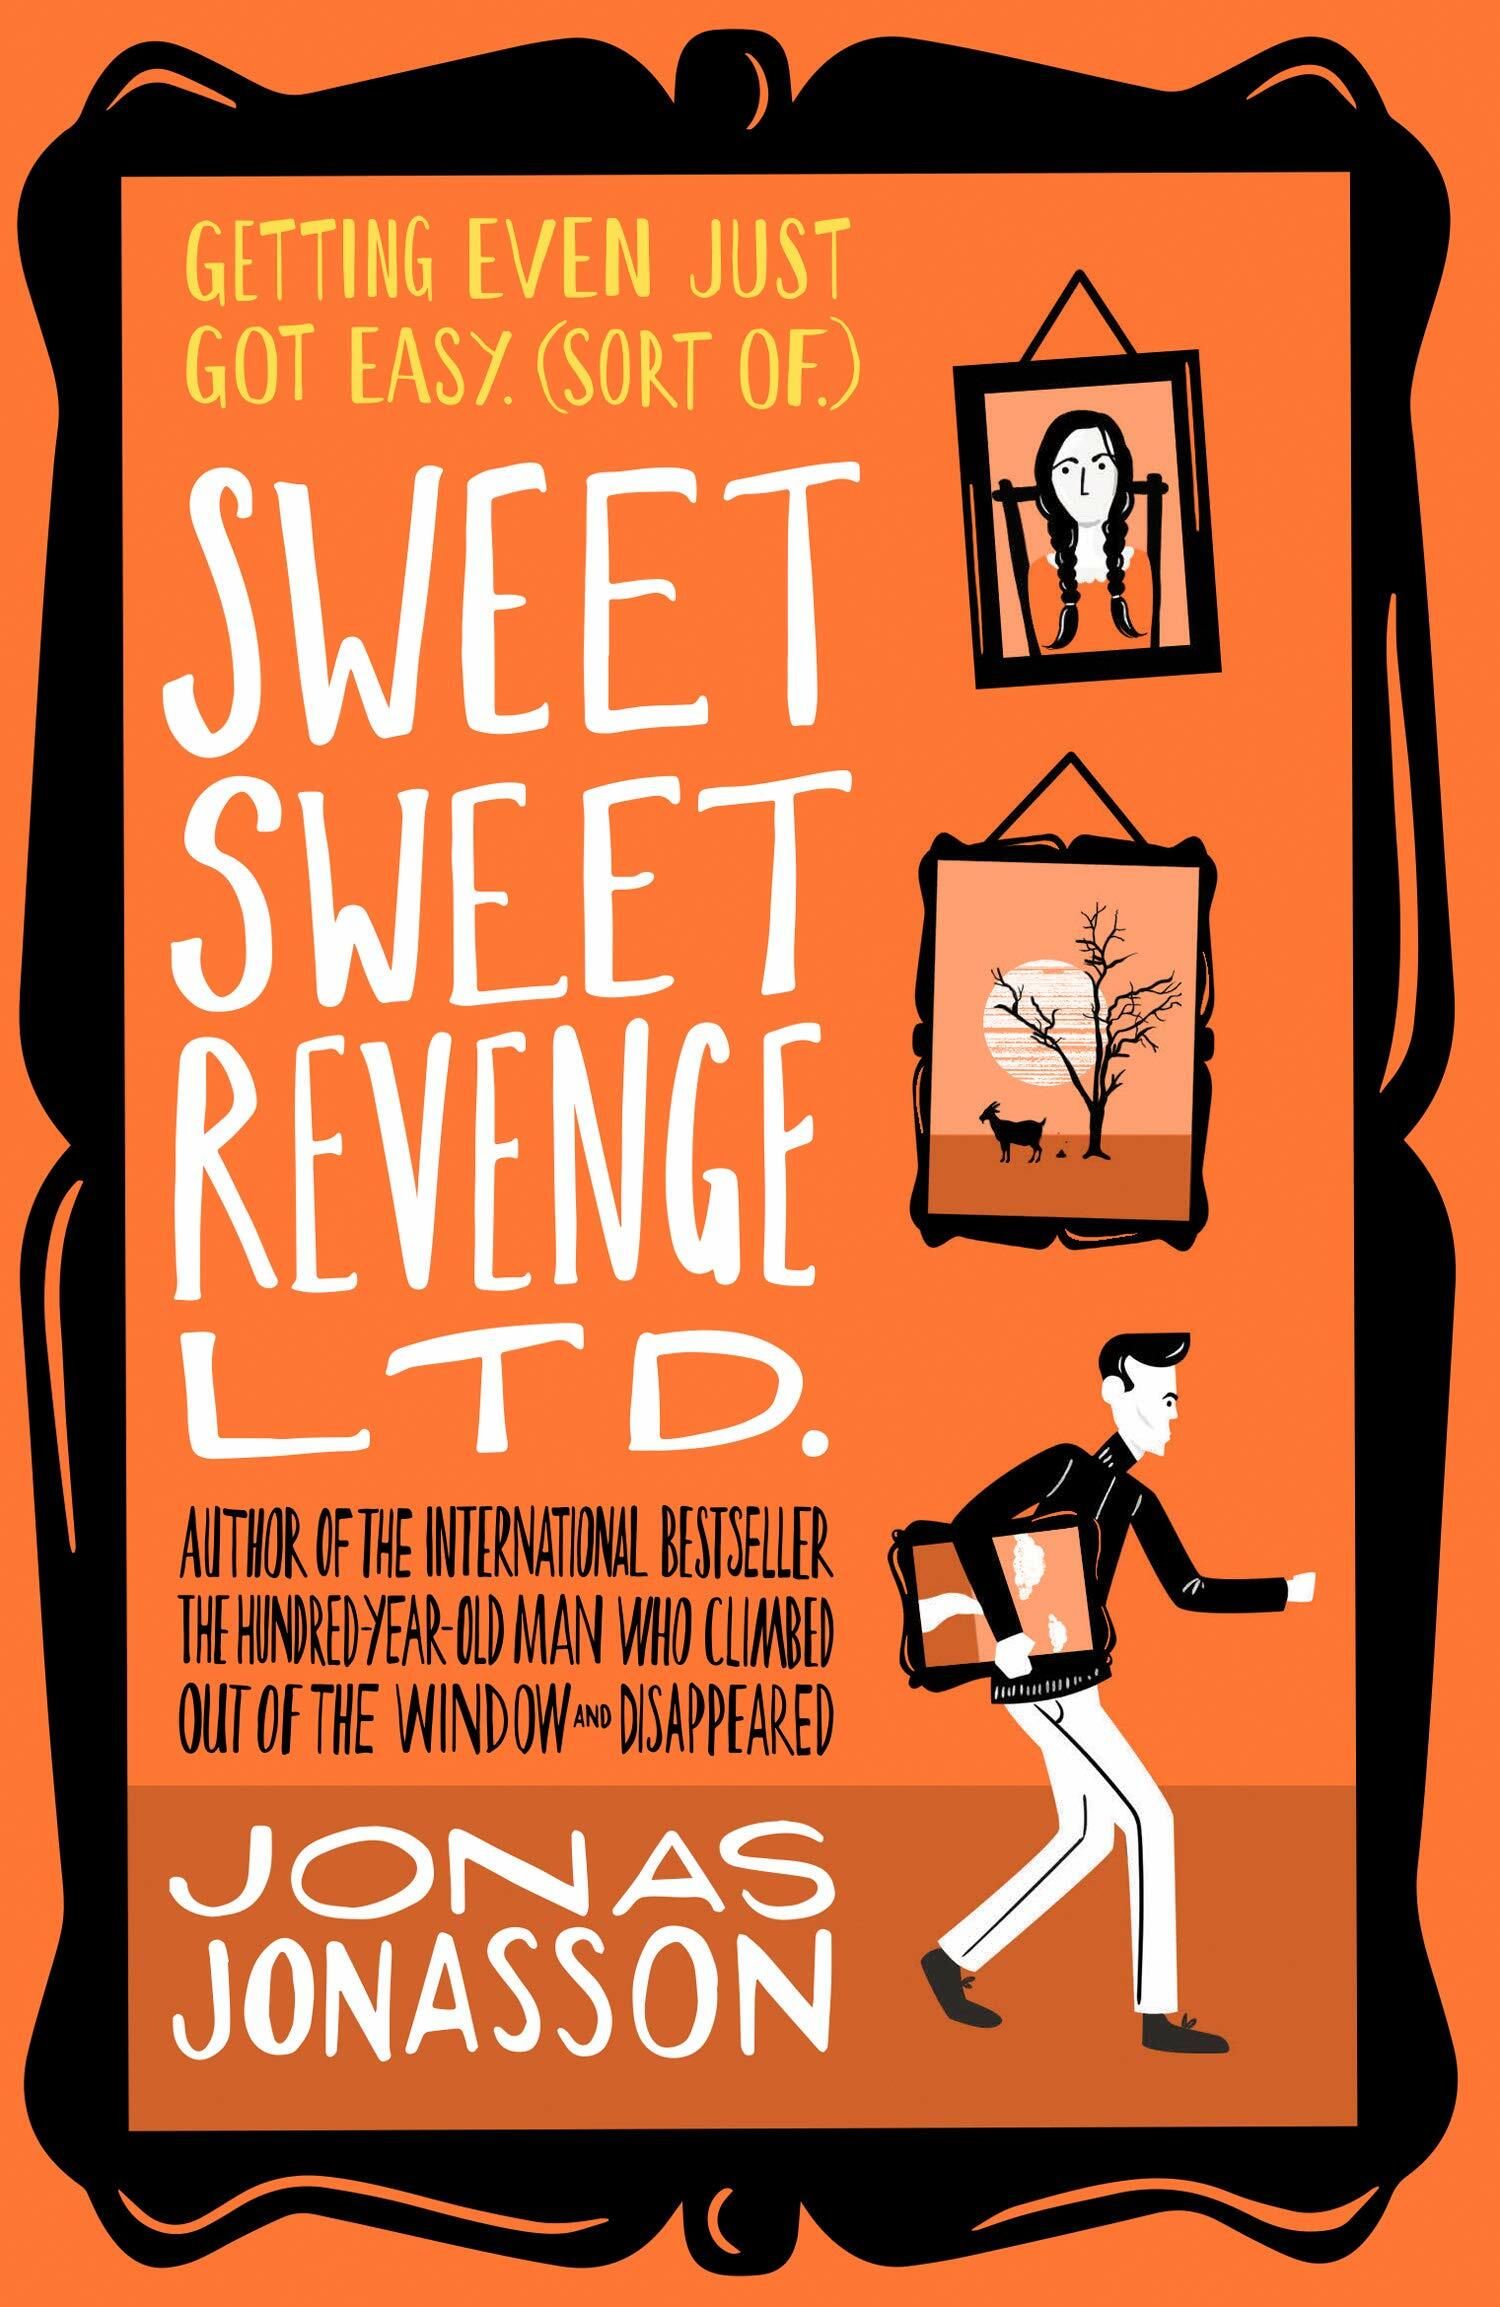 Sweet Sweet Revenge Ltd. (Paperback)